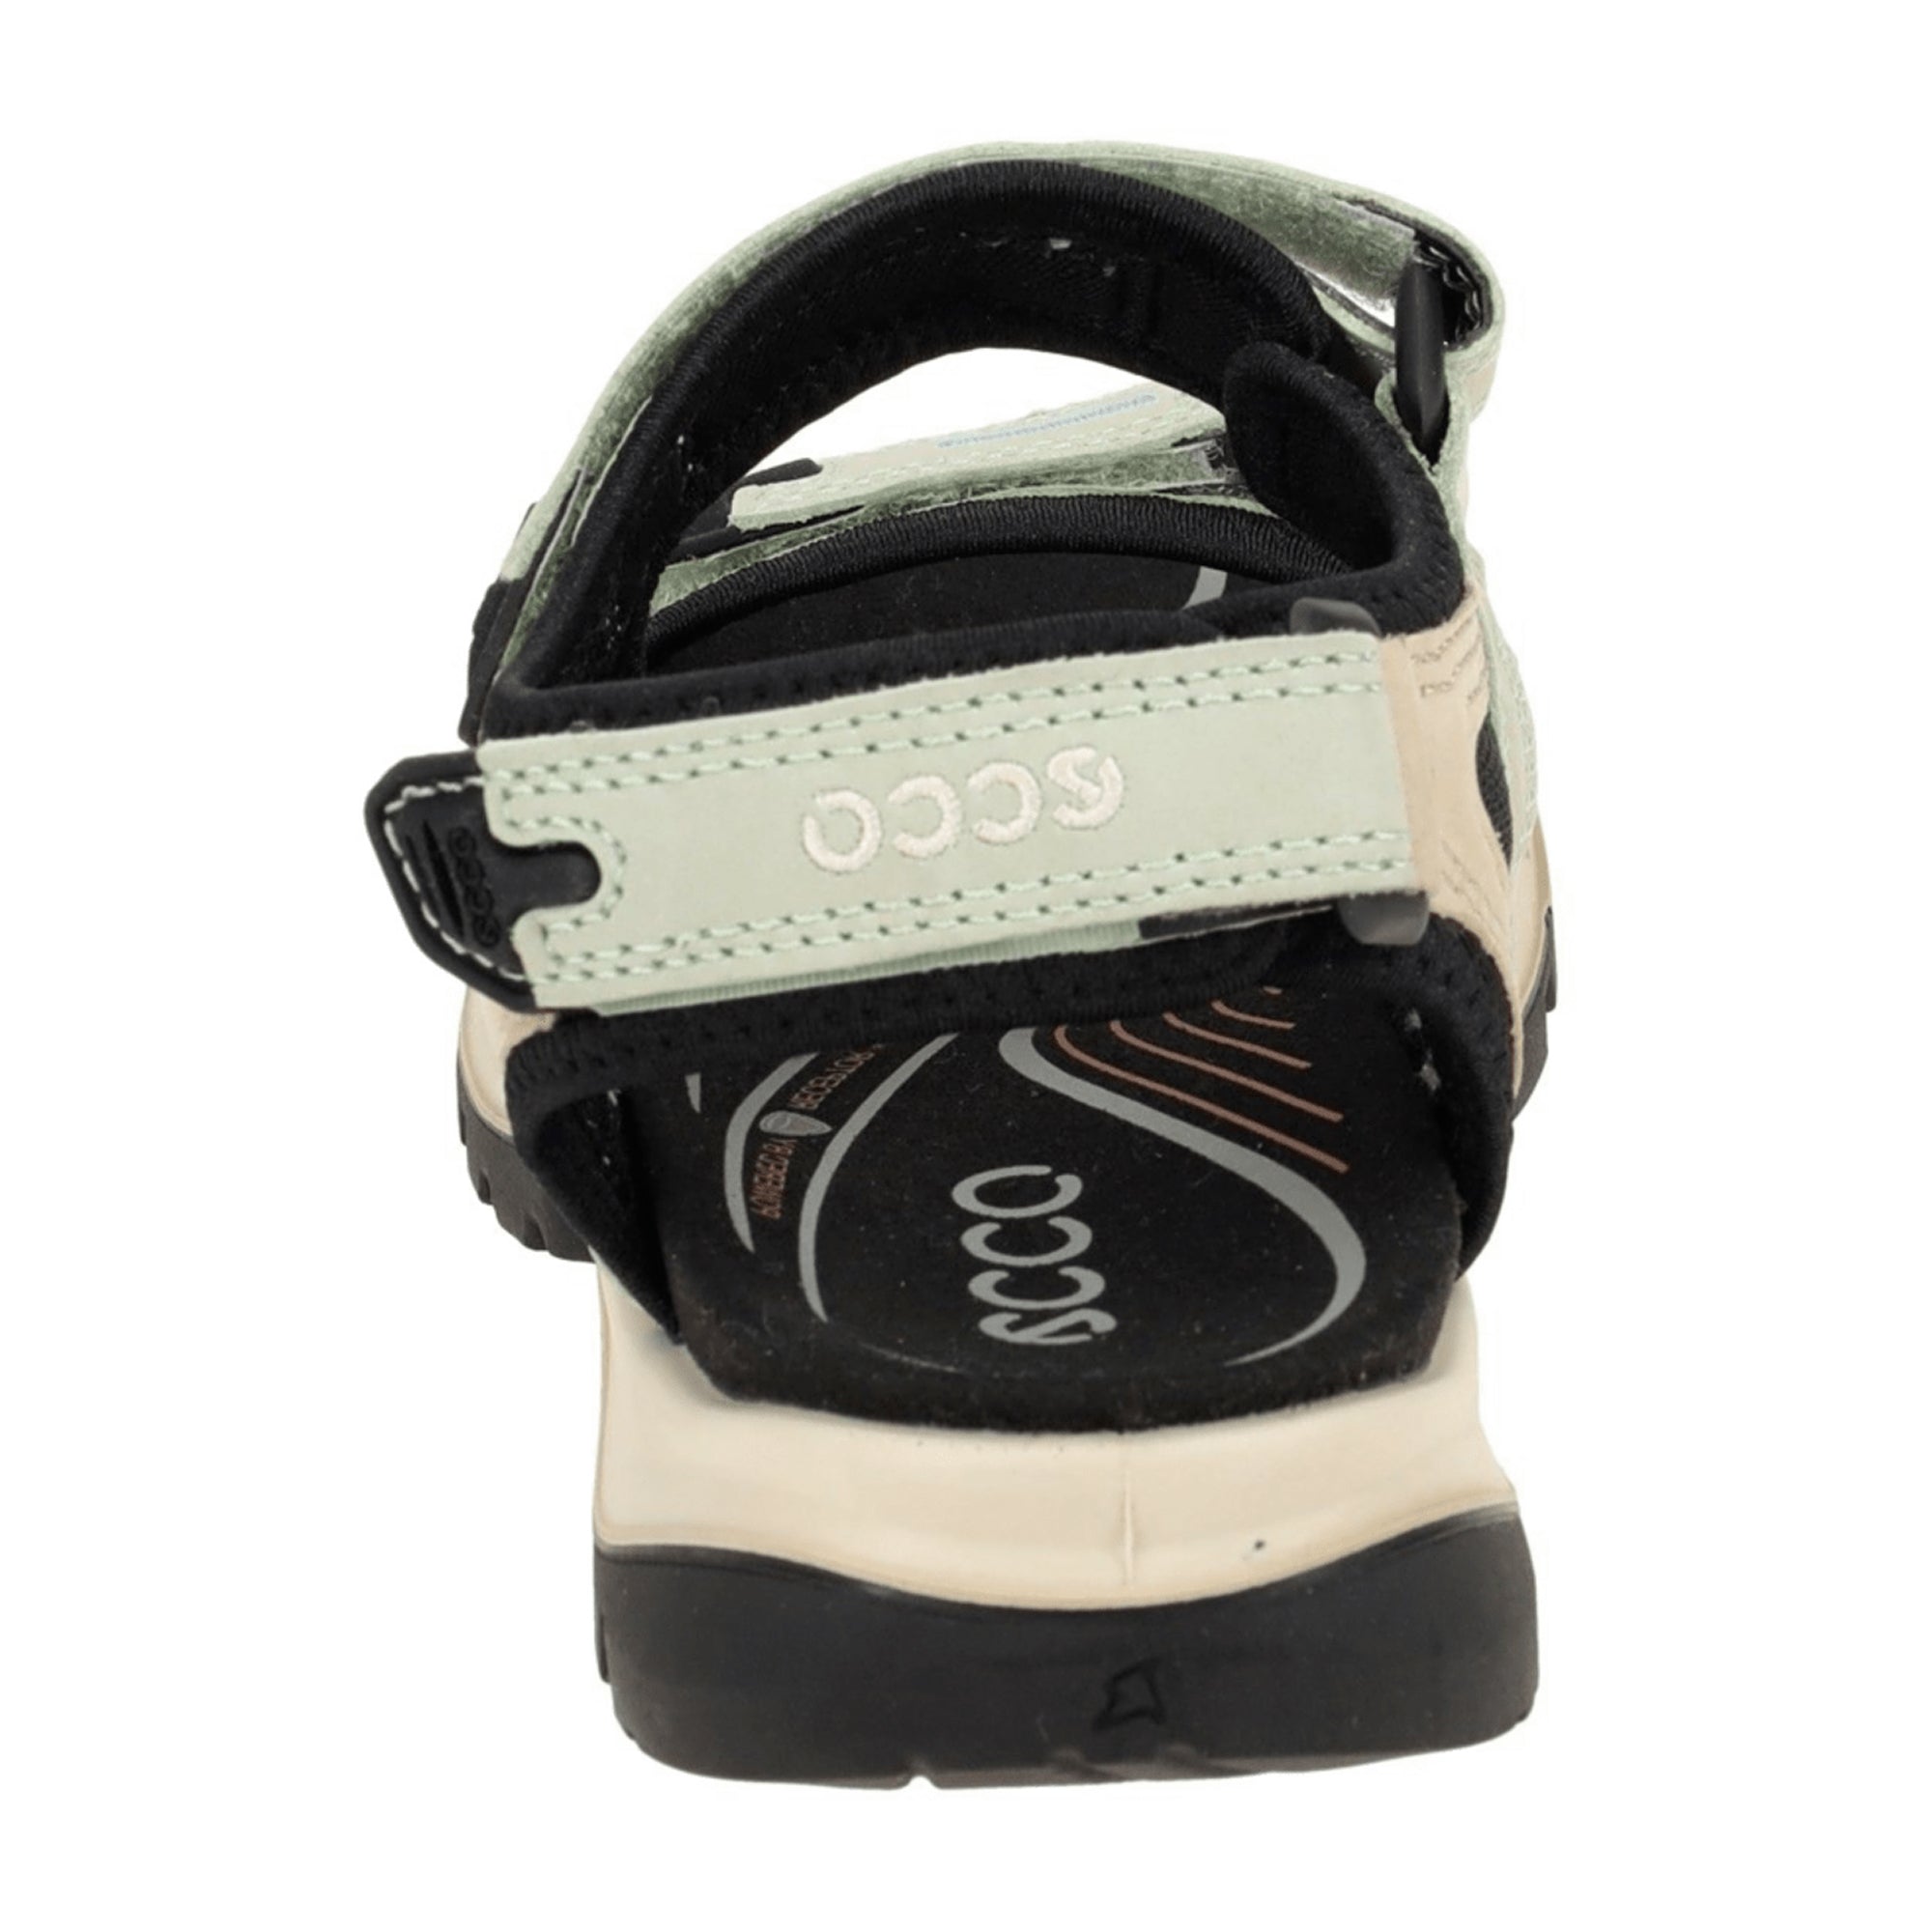 Ecco Women's Offroad Sandals - Durable Outdoor Footwear, Green